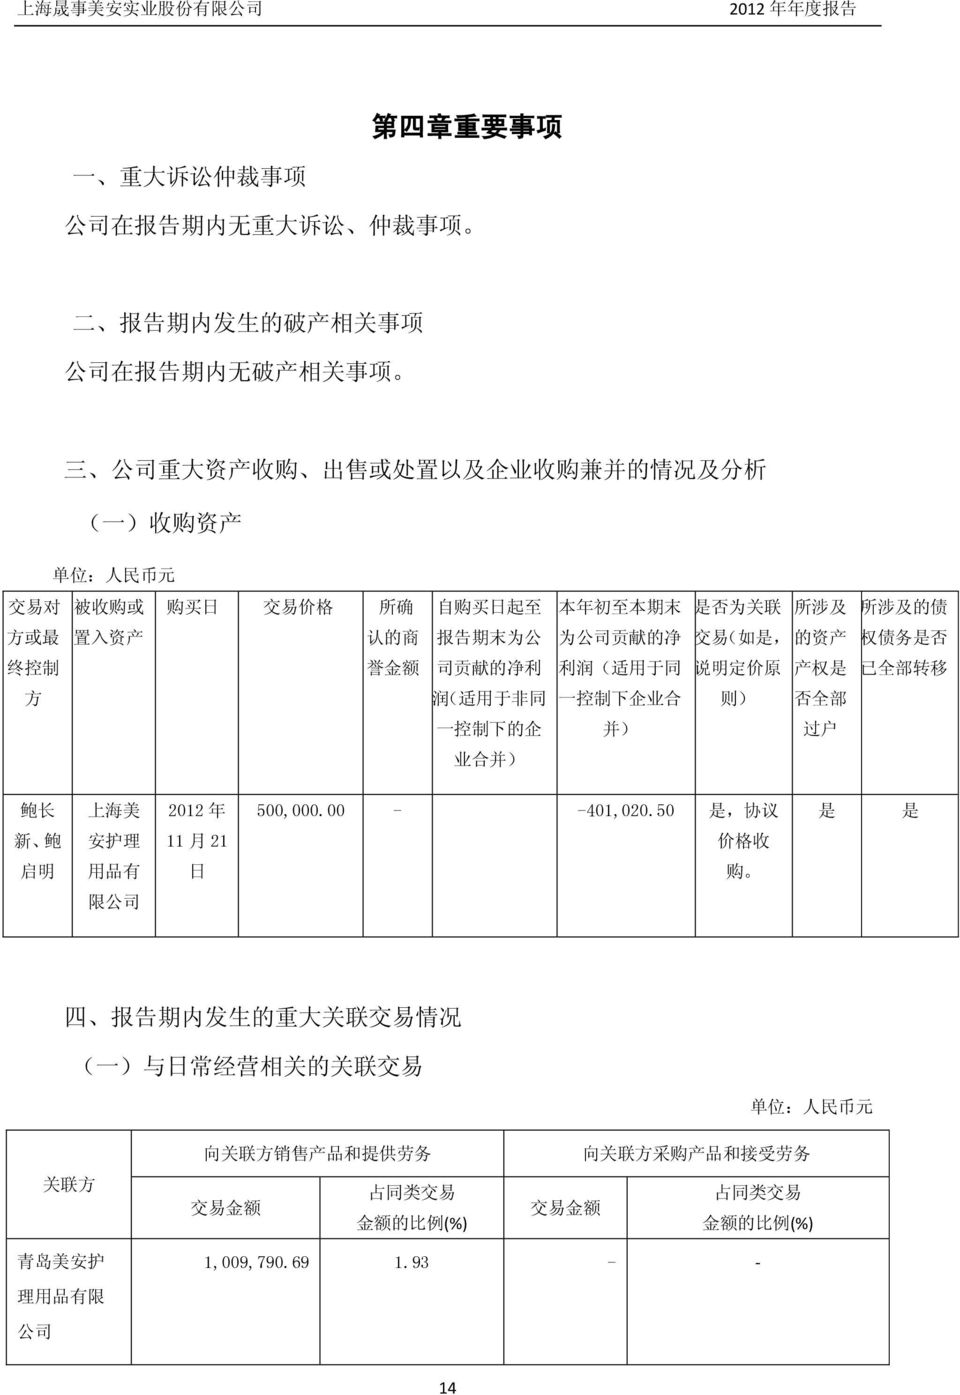 说 明 定 价 原 产 权 是 已 全 部 转 移 方 润 ( 适 用 于 非 同 一 控 制 下 企 业 合 则 ) 否 全 部 一 控 制 下 的 企 并 ) 过 户 业 合 并 ) 鲍 长 上 海 美 2012 年 500,000.00 401,020.